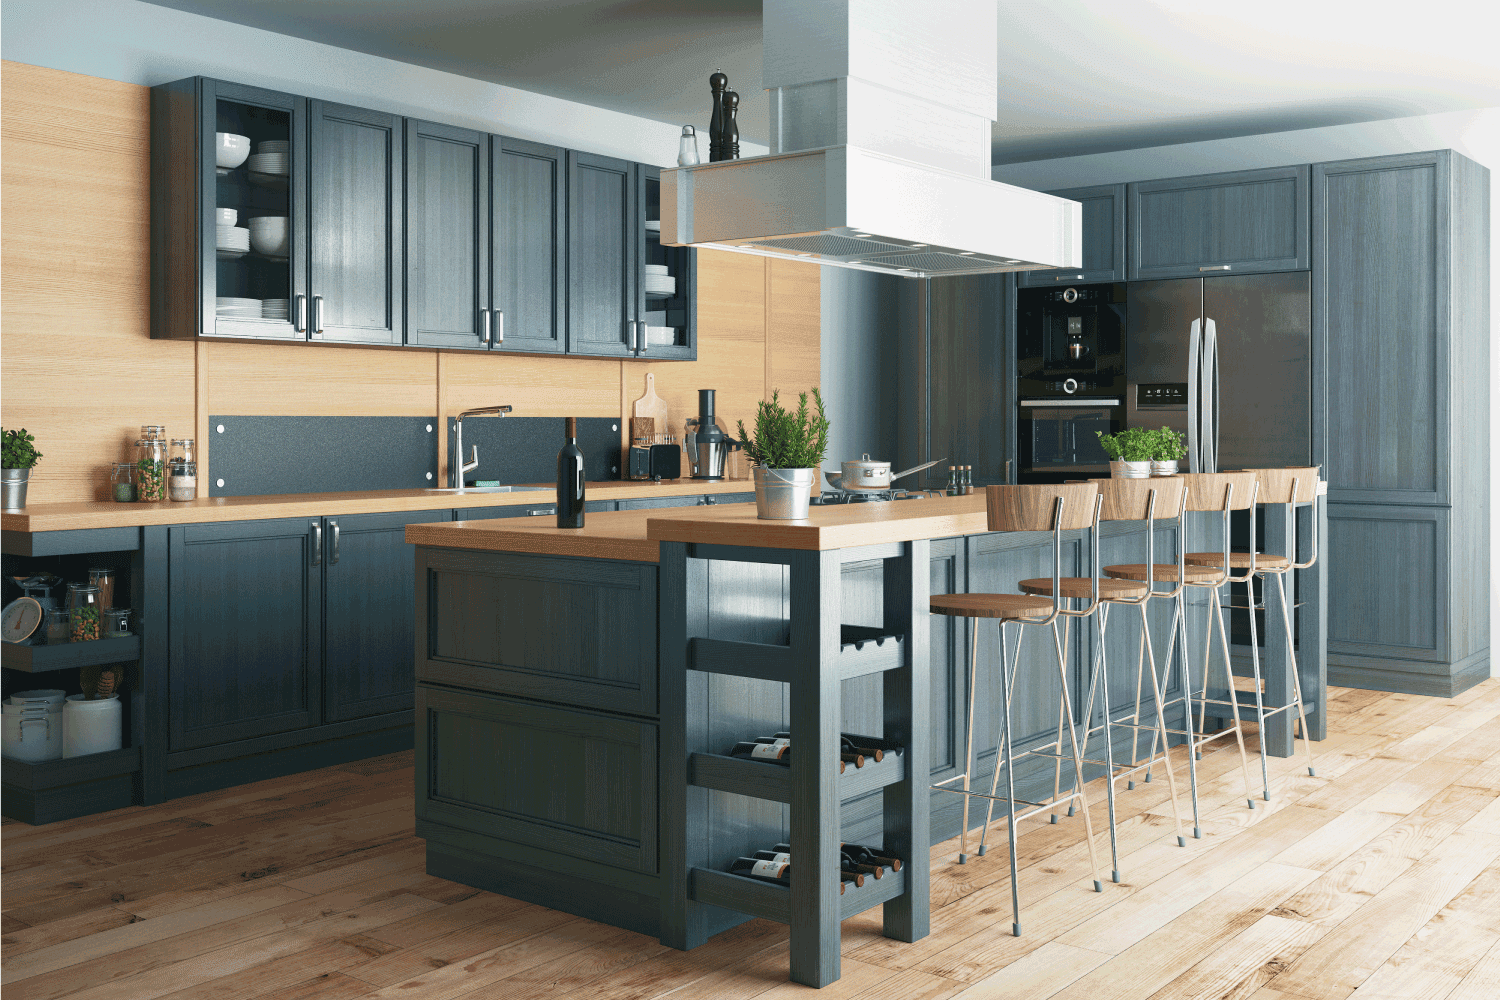 Interior of modern kitchen in luxury mansion. indigo painted wood